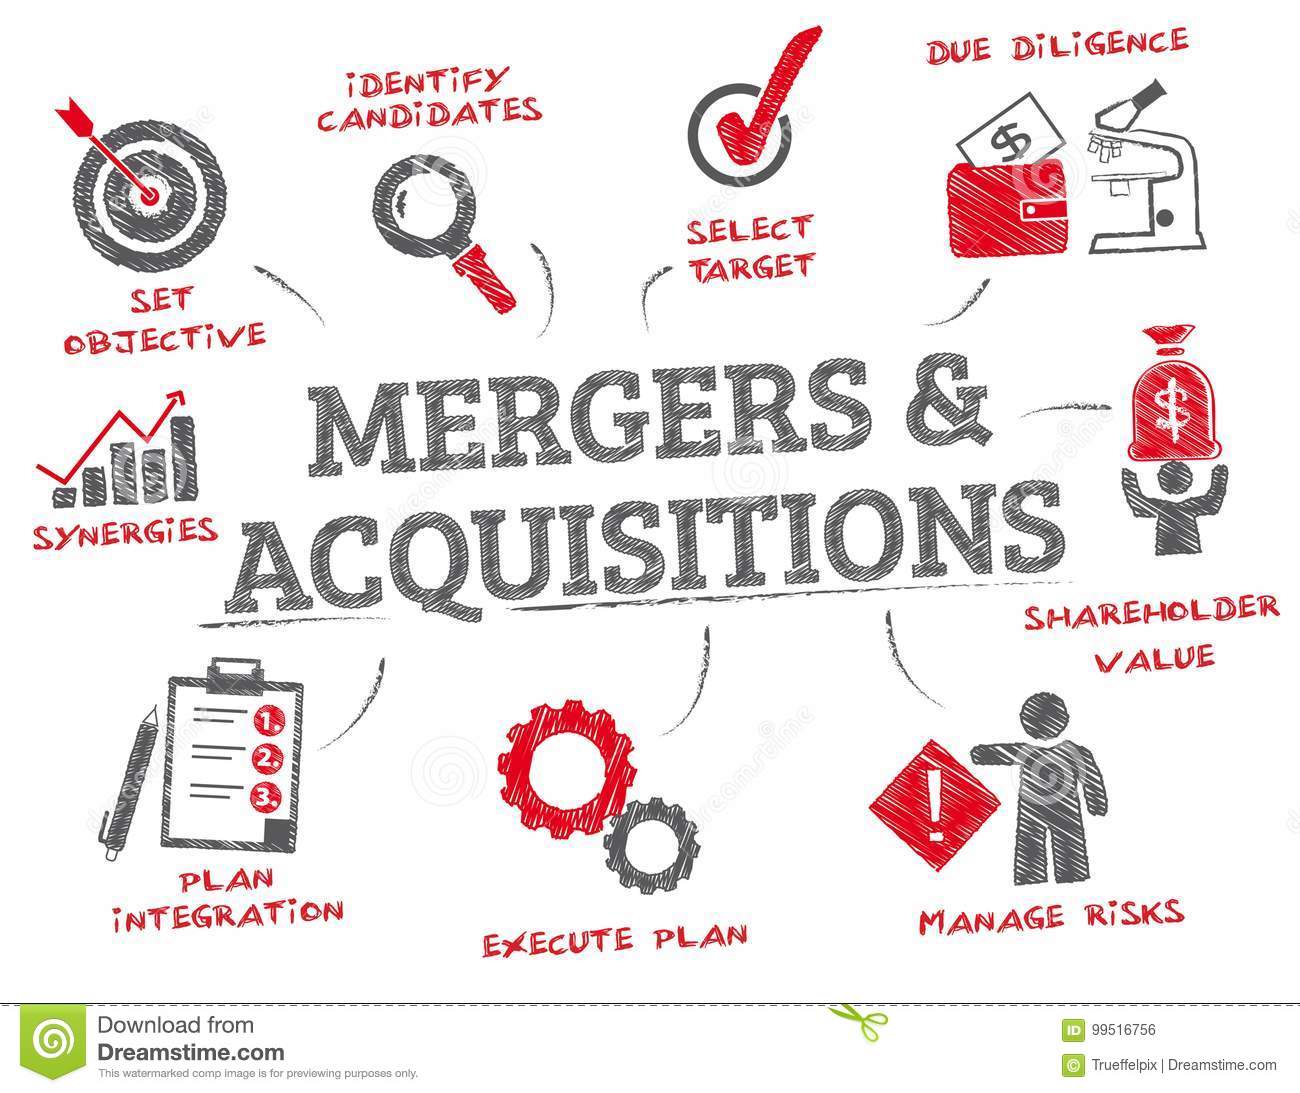 mergers-acquisitions-m-merger-acquisitions-concept-chart-keywords